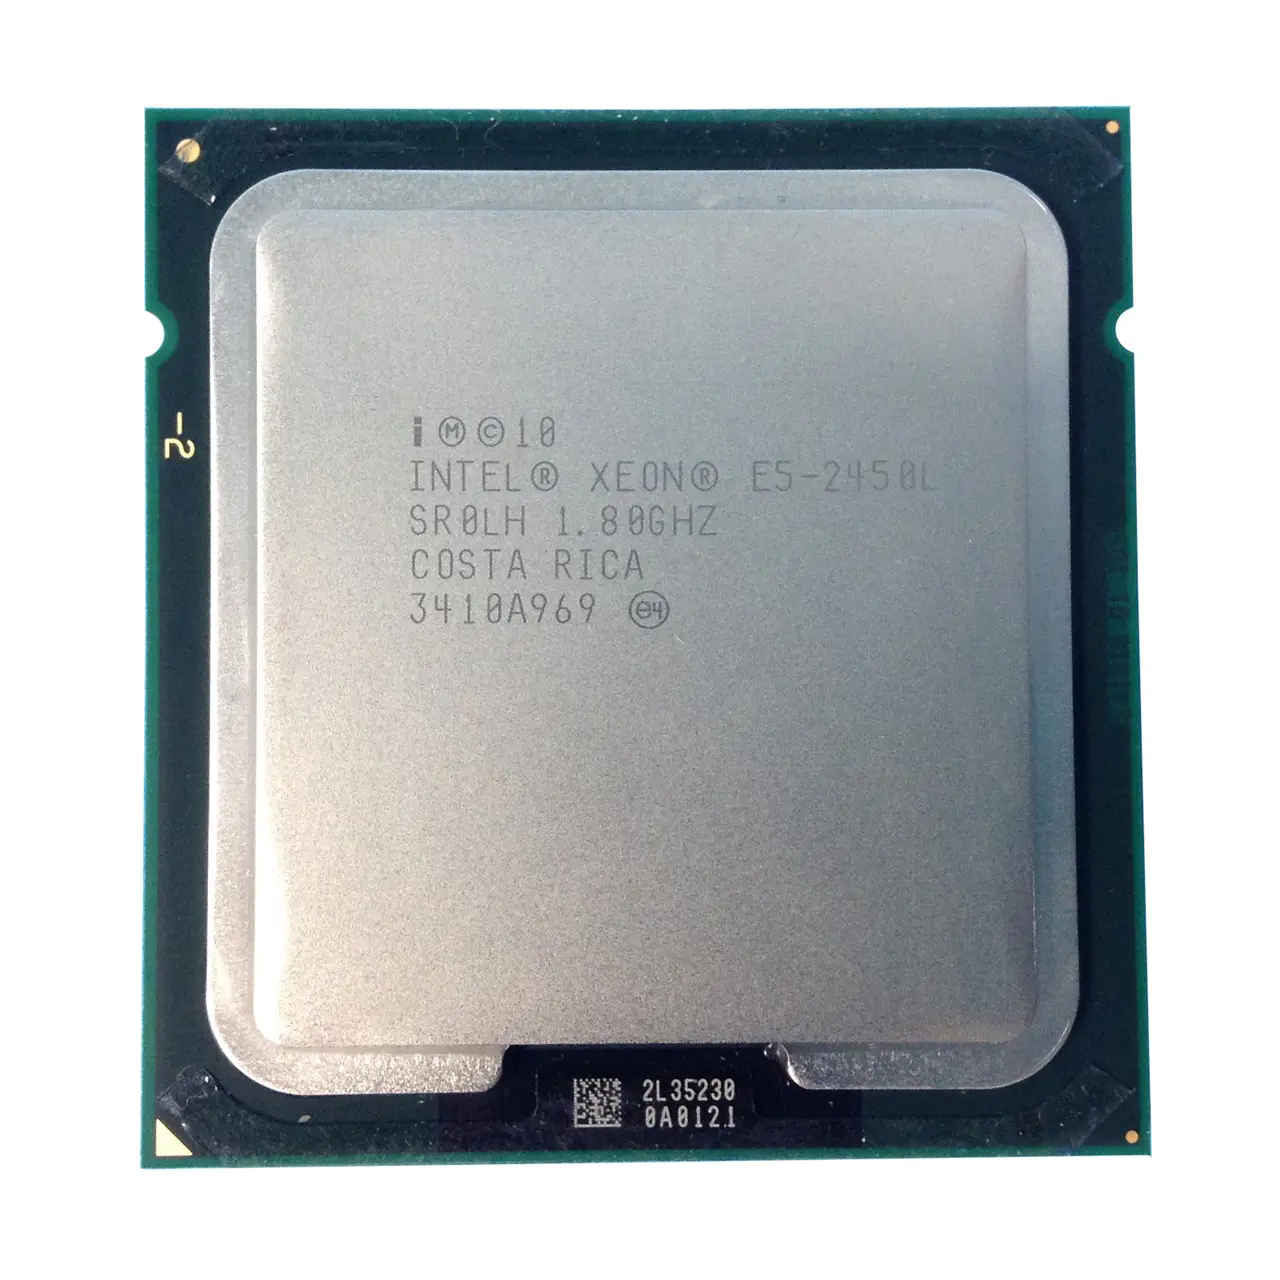 2011-3-pin in tel Xeon E5-1620 30 50 60 80 E5-2670 2667V3 2430L 2450L 2407V2 2690V4 2630V3 2420V2 2470V2 I7 5820K CPUS processor